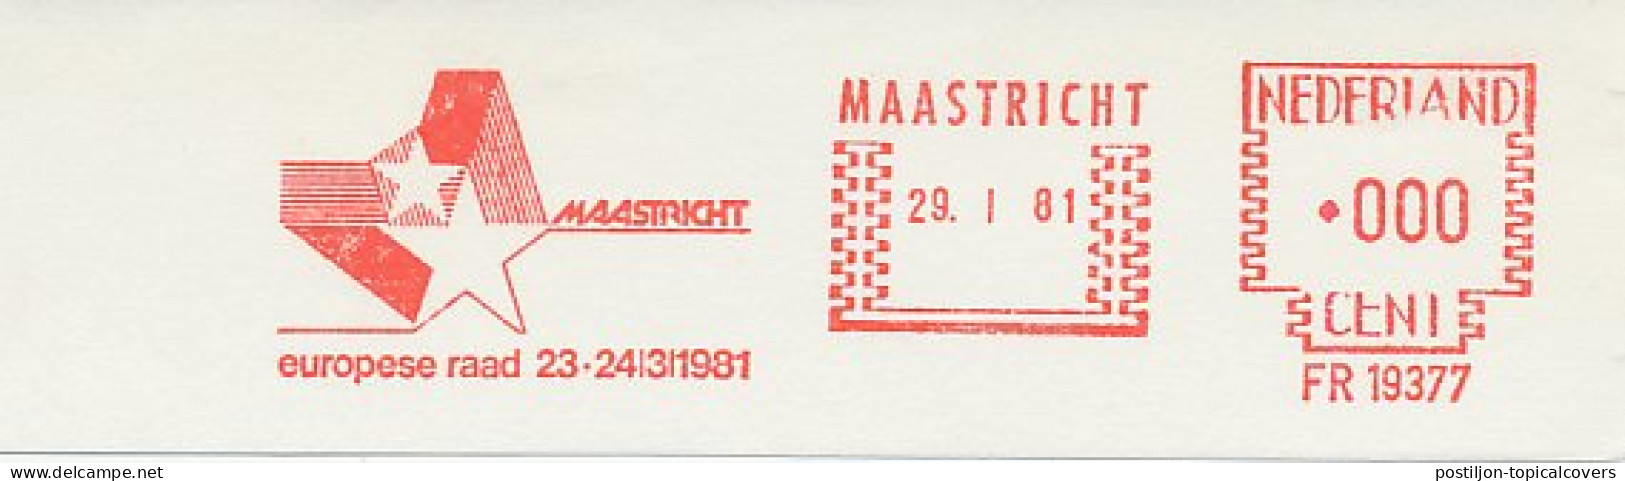 Meter Proof / Test Strip Netherlands 1981 European Council Maastricht - EU-Organe